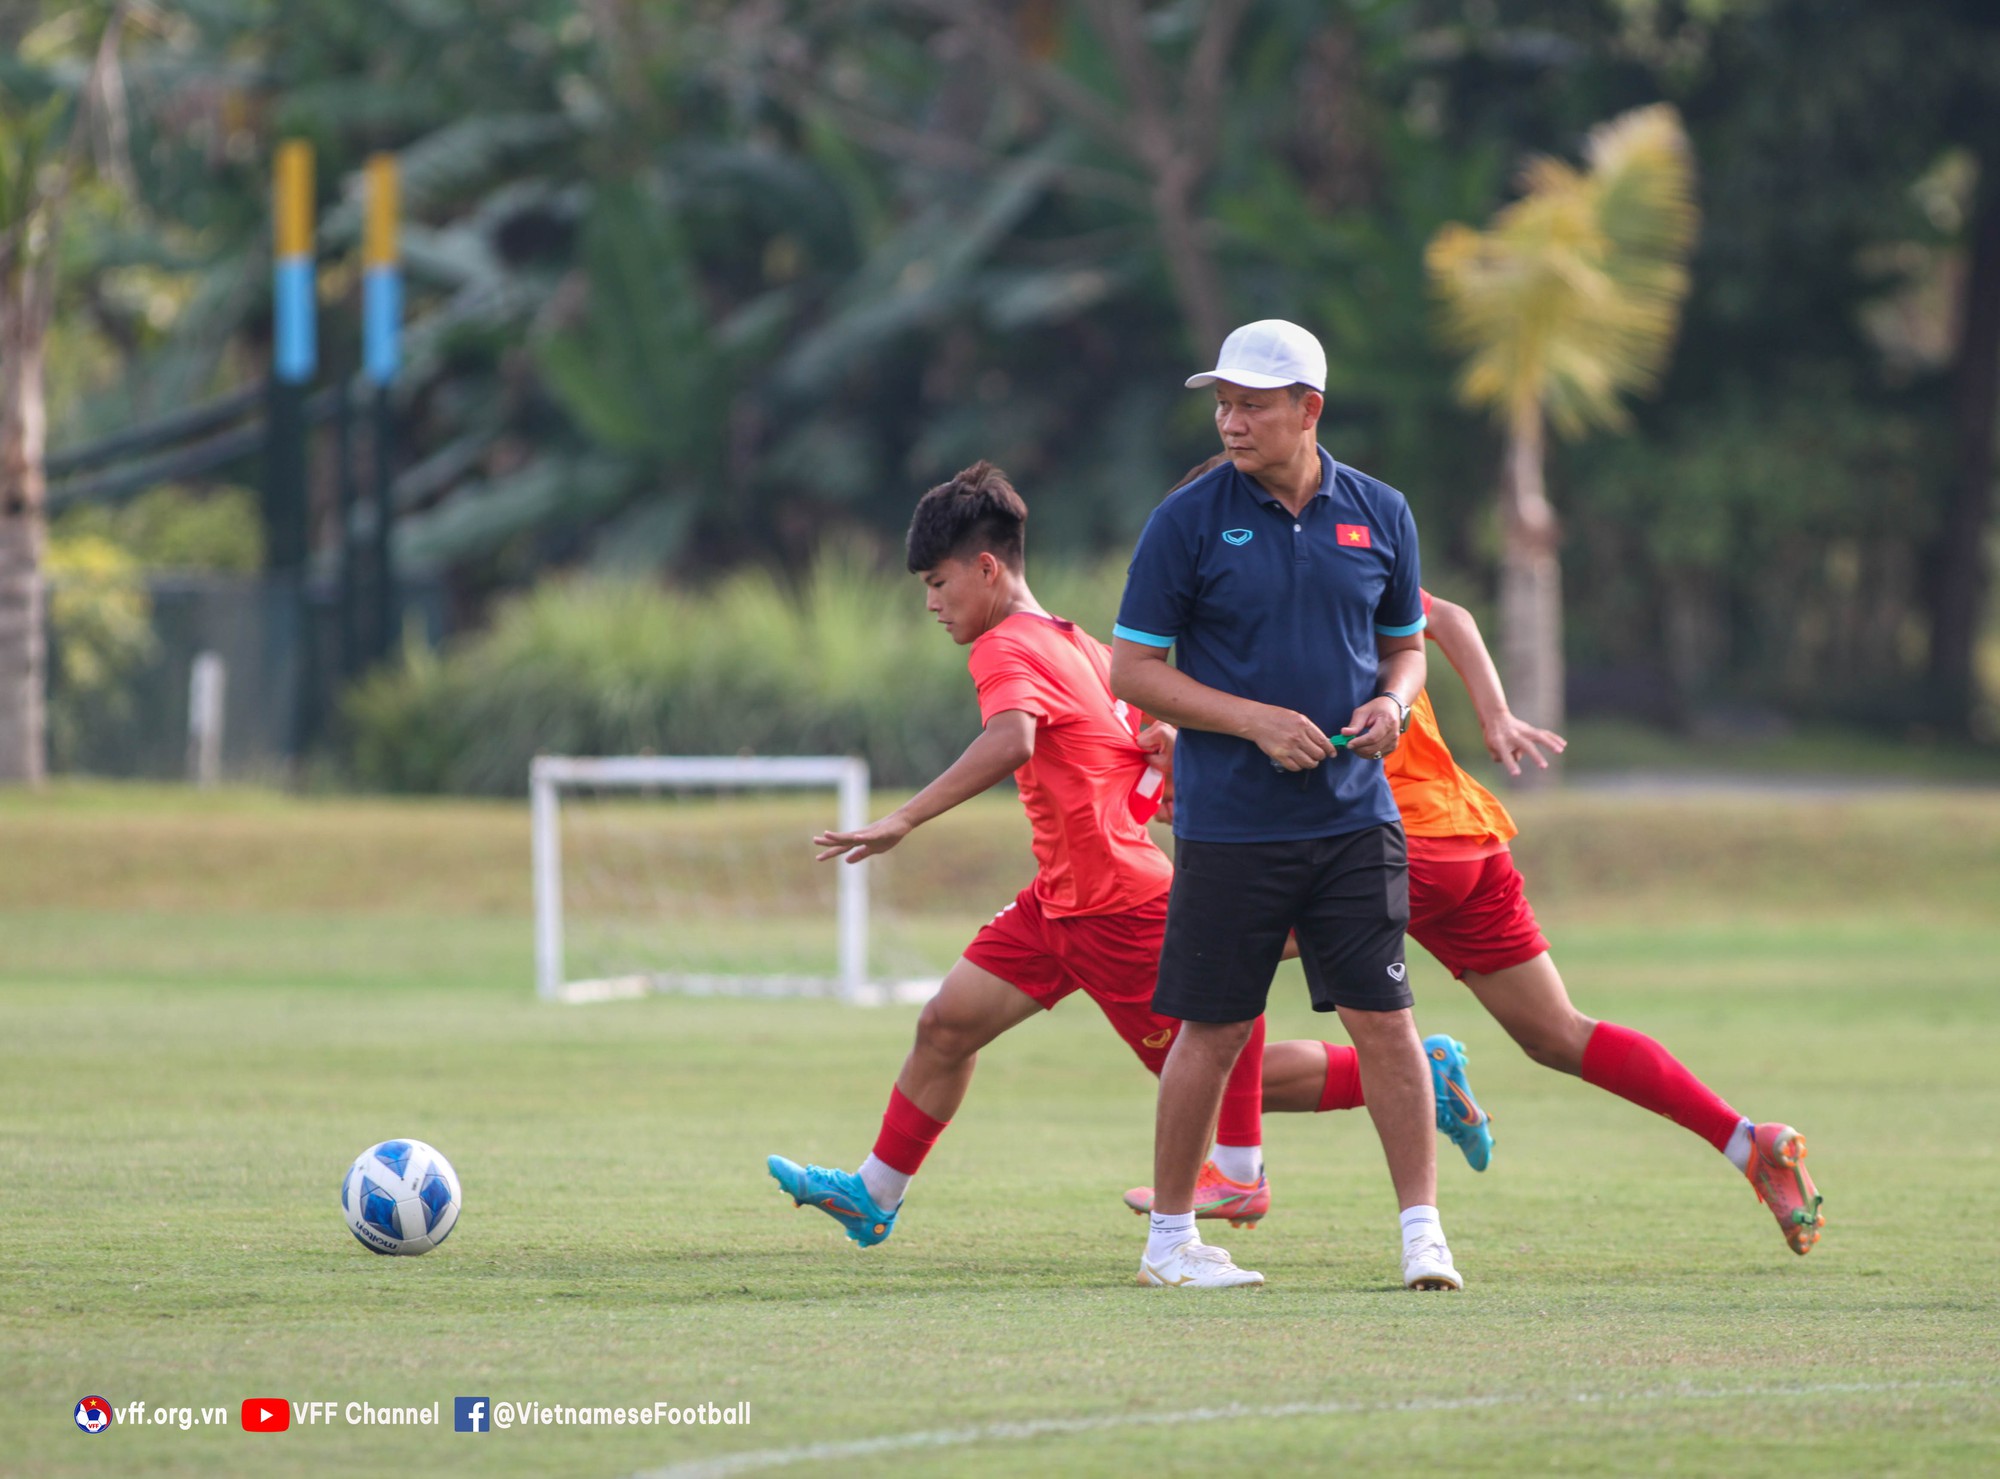 Đội trưởng U16 Việt Nam Nguyễn Công Phương nói gì trước trận đấu U16 Philippines? - Ảnh 3.